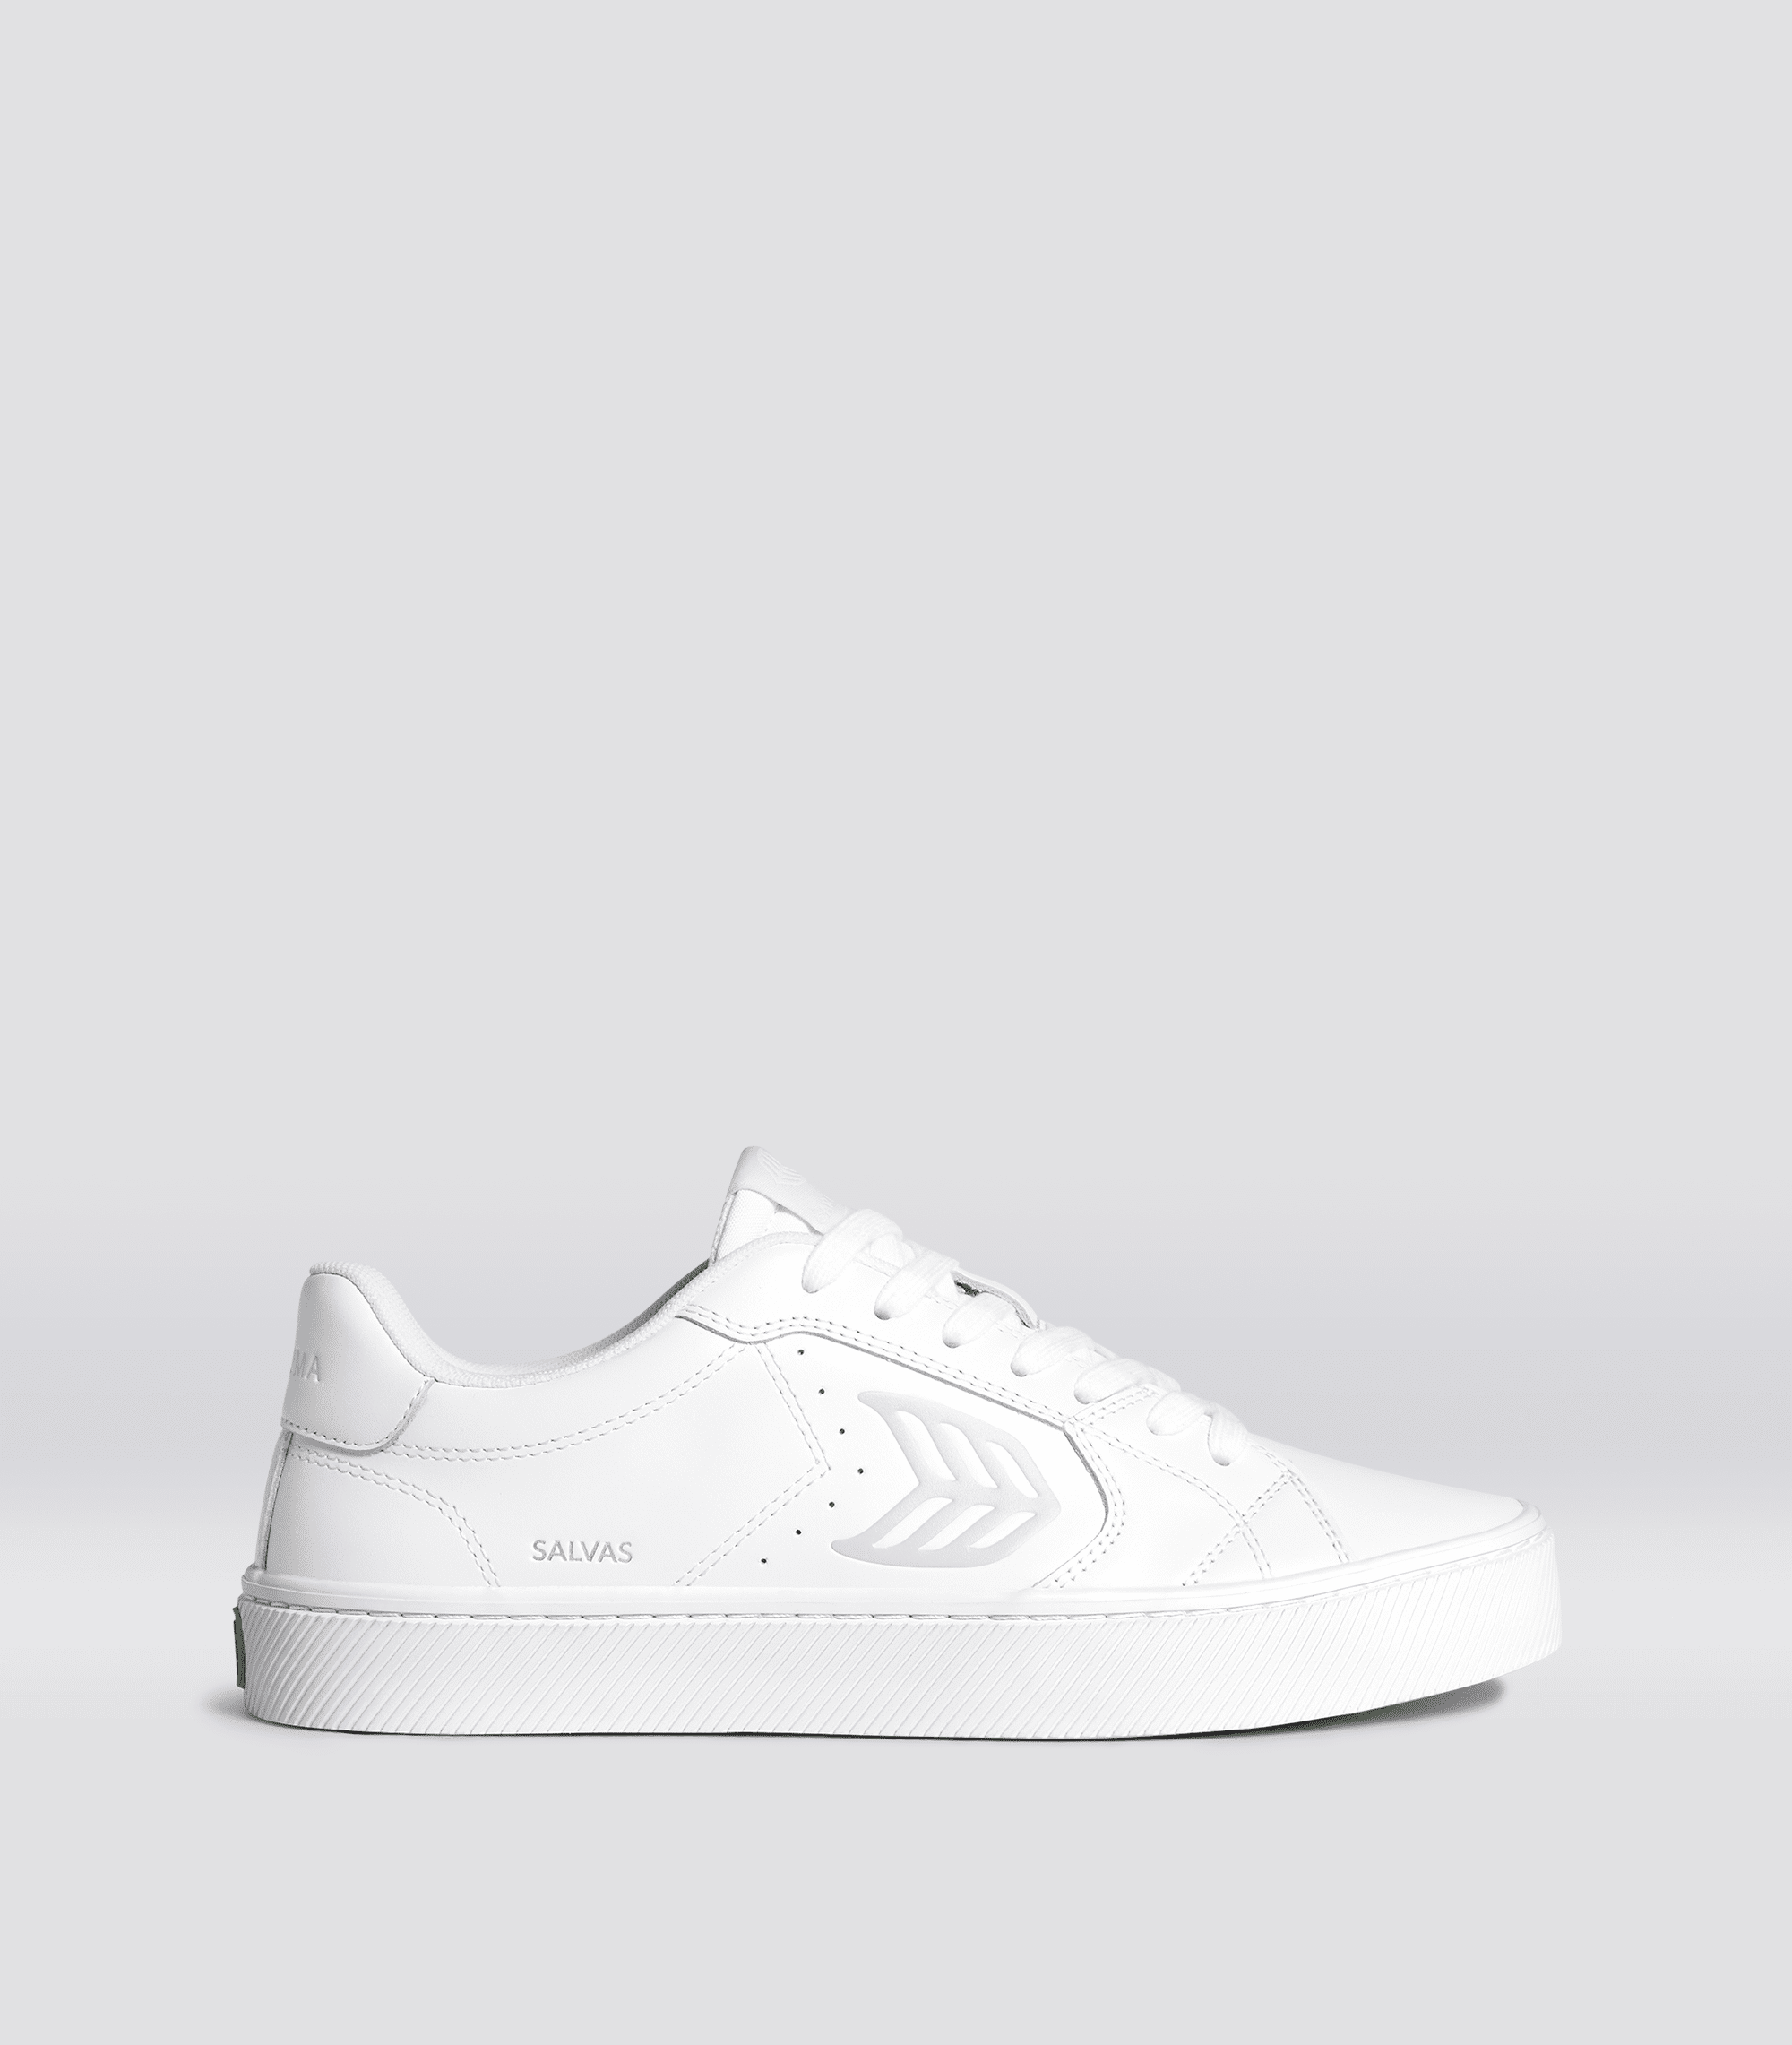 Cariuma SALVAS White Leather Sneaker Men White size:10.5